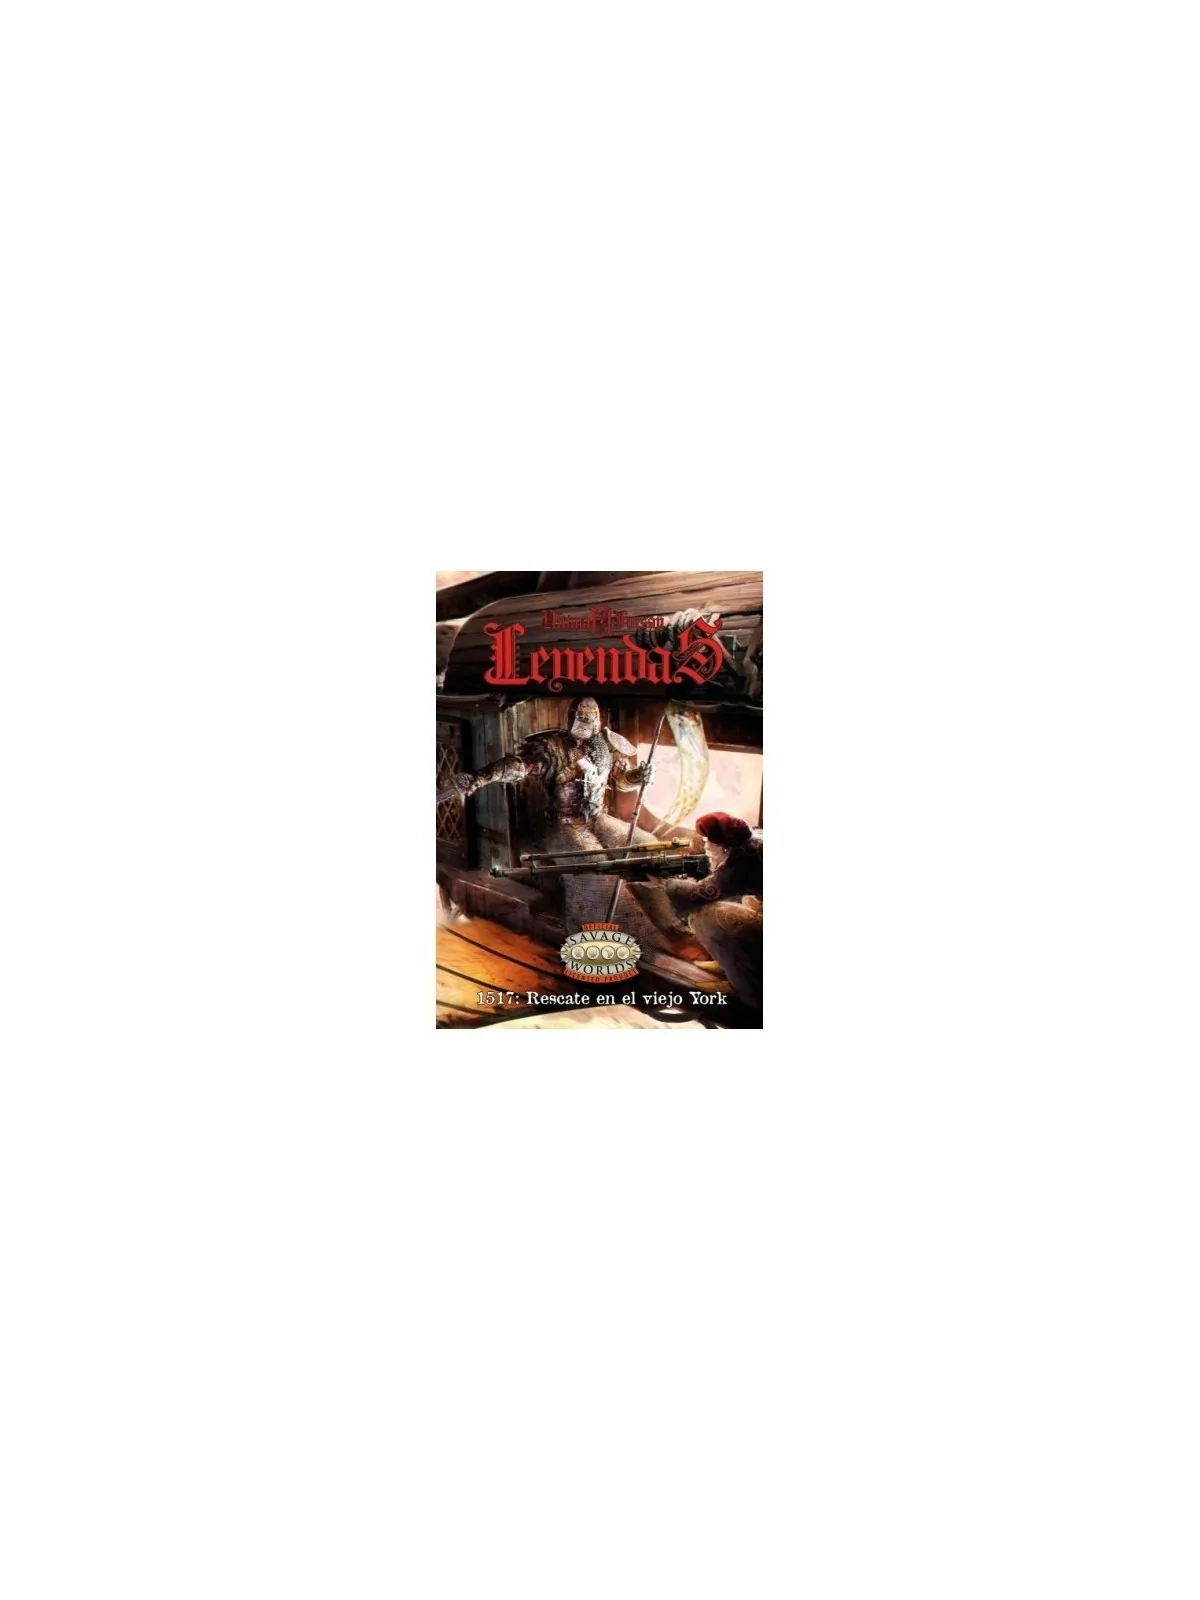 Comprar Savage Worlds Ultima Forsan: Leyendas 1517 - Rescate en el Vie